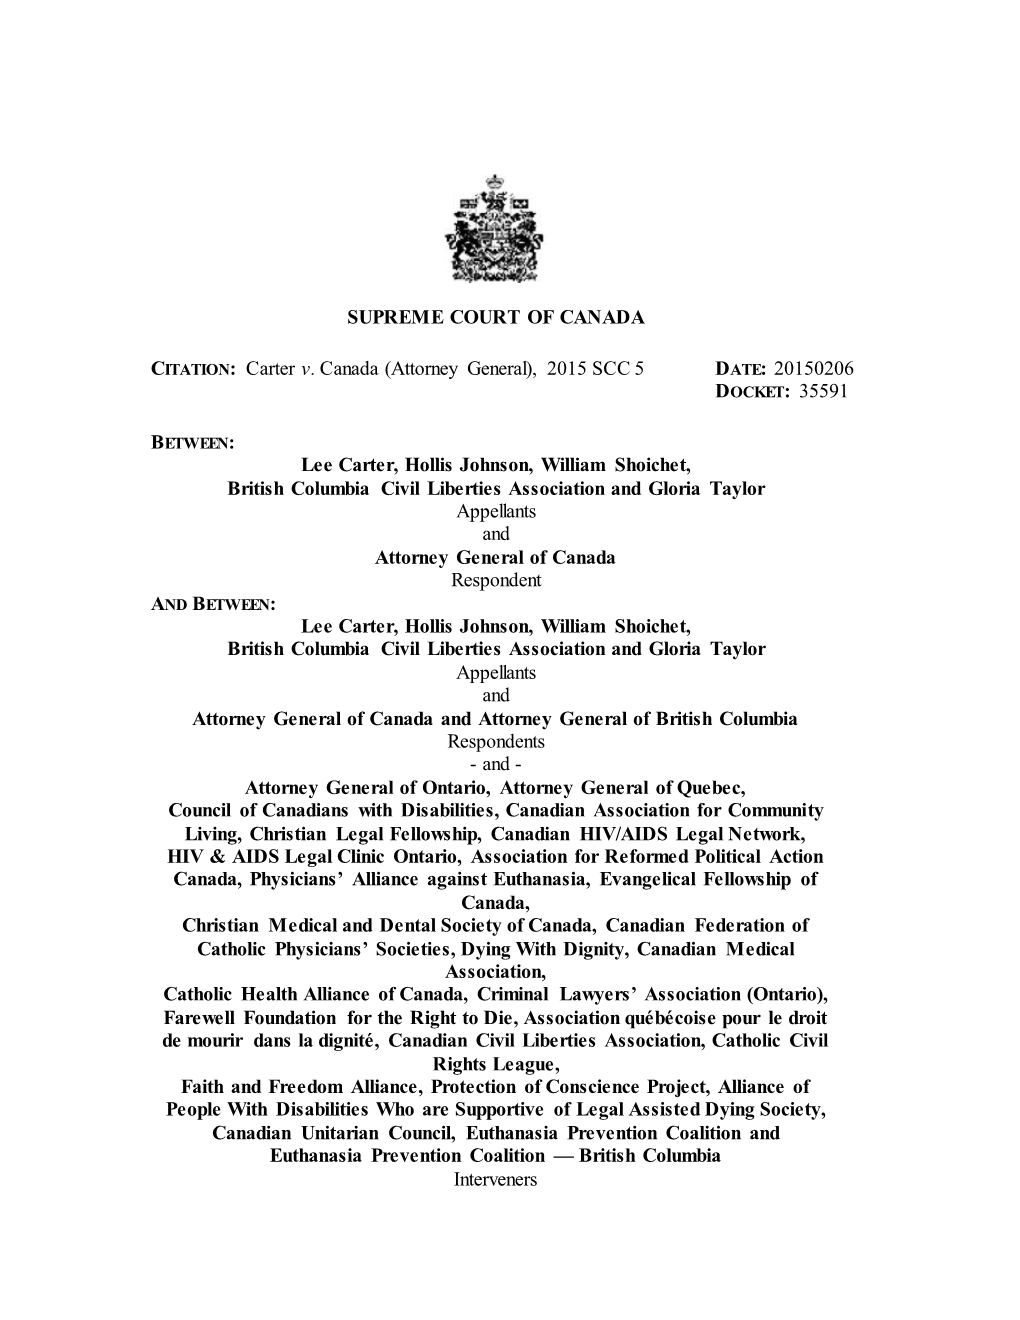 Carter V. Canada (Attorney General), 2015 SCC 5 DATE: 20150206 DOCKET: 35591